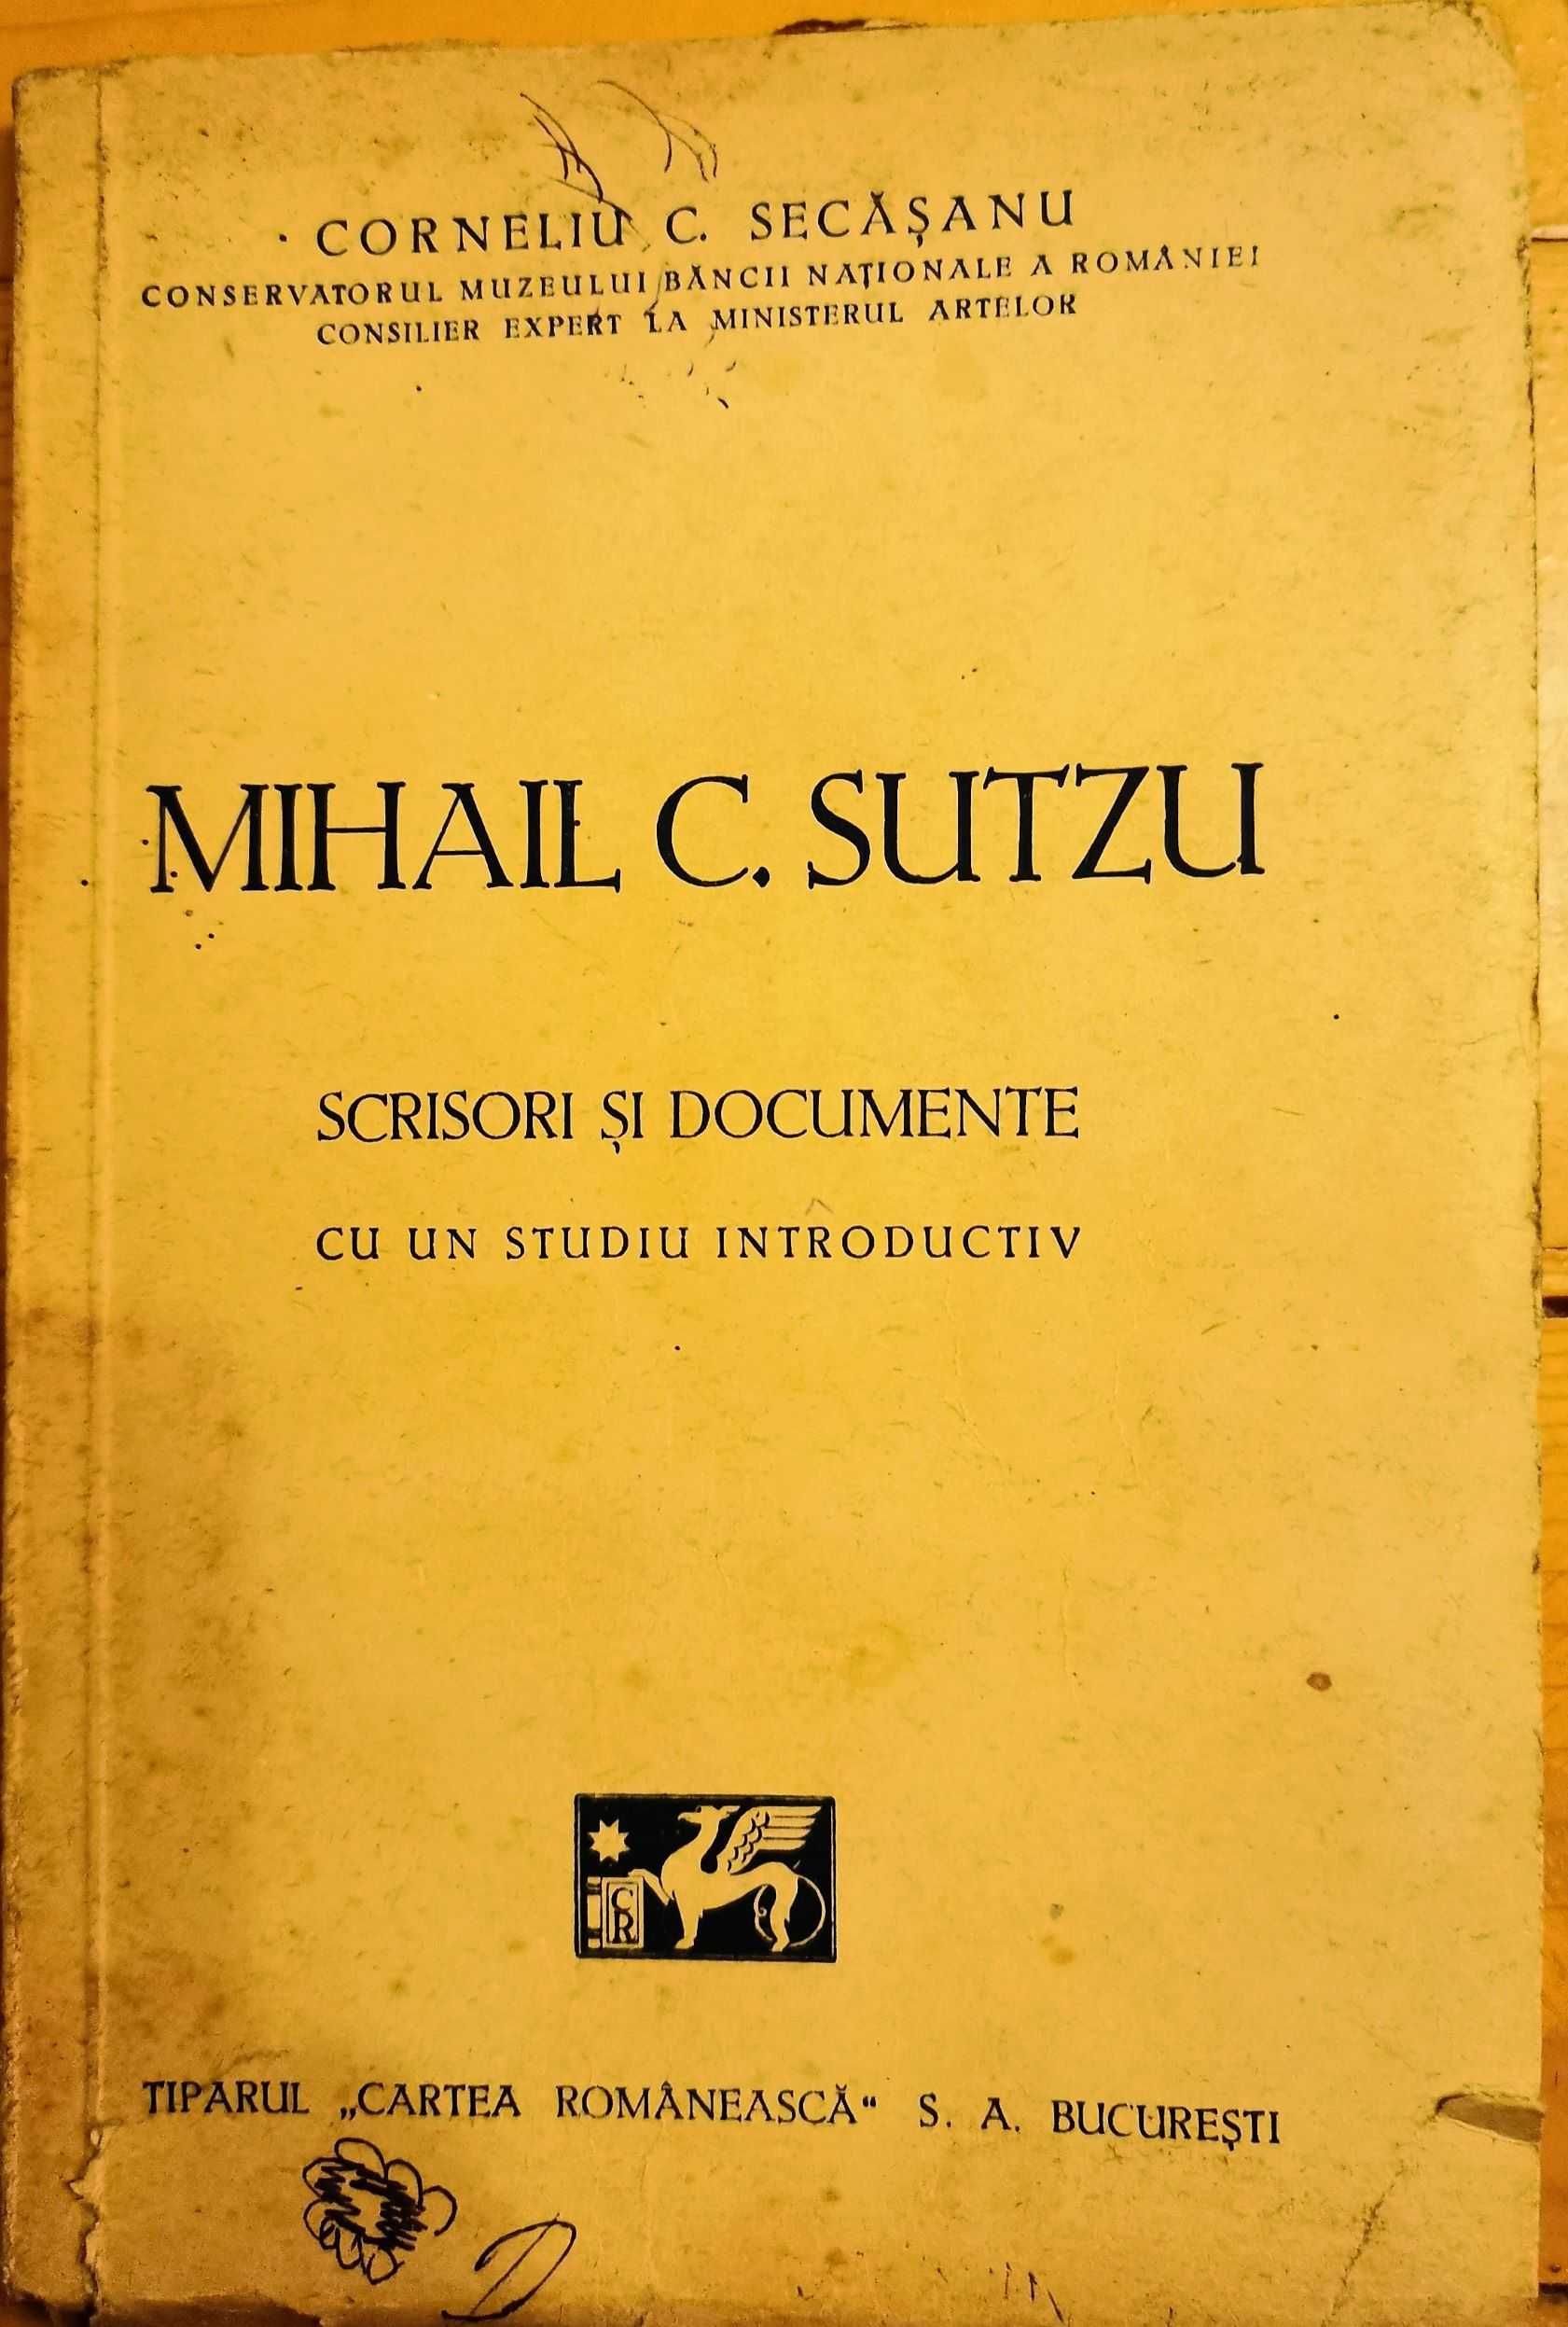 Scrisori si Documente de Corneliu C. Secasanu - Mihail C. Sutzu-